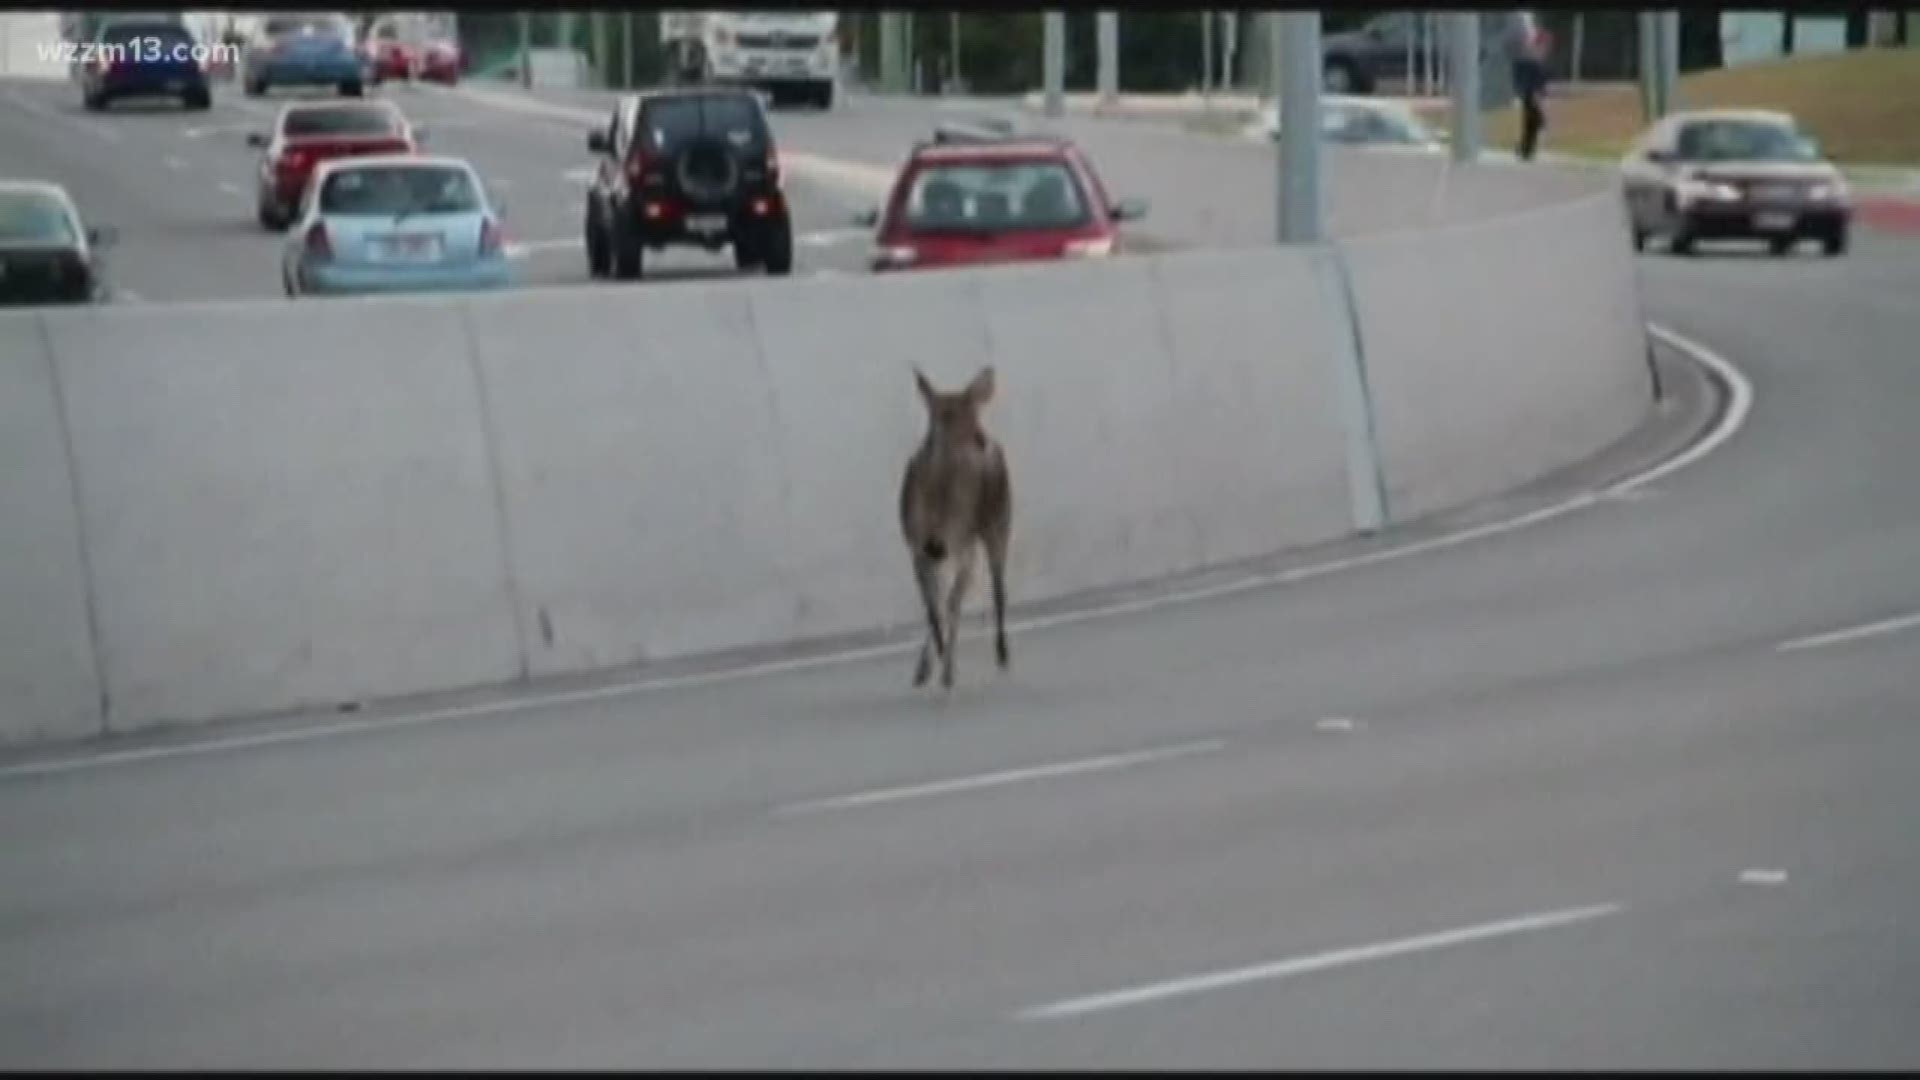 Deer season begins, watch out drivers 2